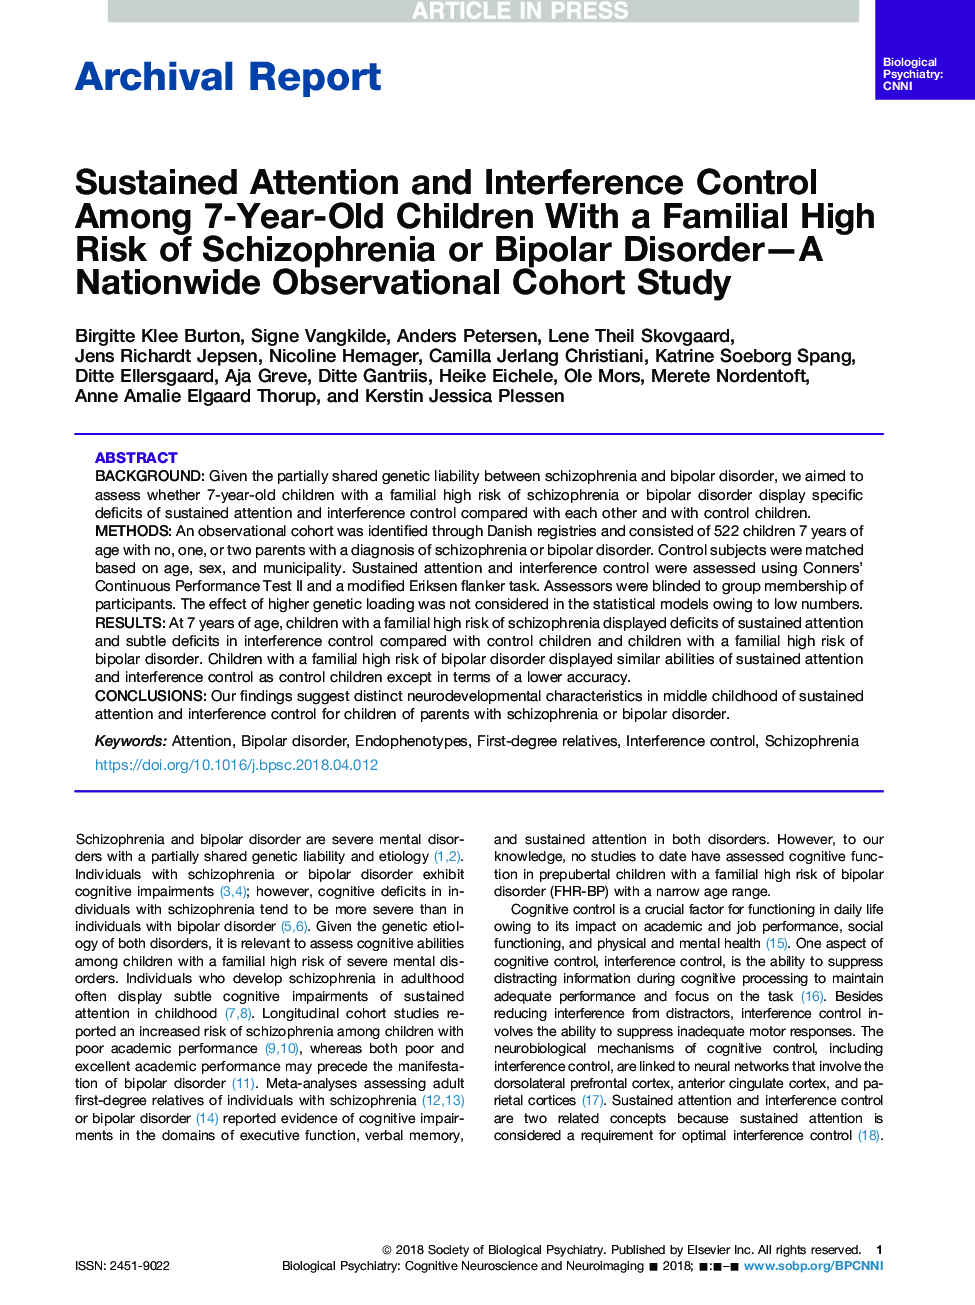 کنترل دائمی توجه و تداخل در میان کودکان 7 ساله با خطر بالای فامیلی اسکیزوفرنیا یا اختلال دوقطبی- یک مطالعه همگروه مشاهده در سراسر کشور 